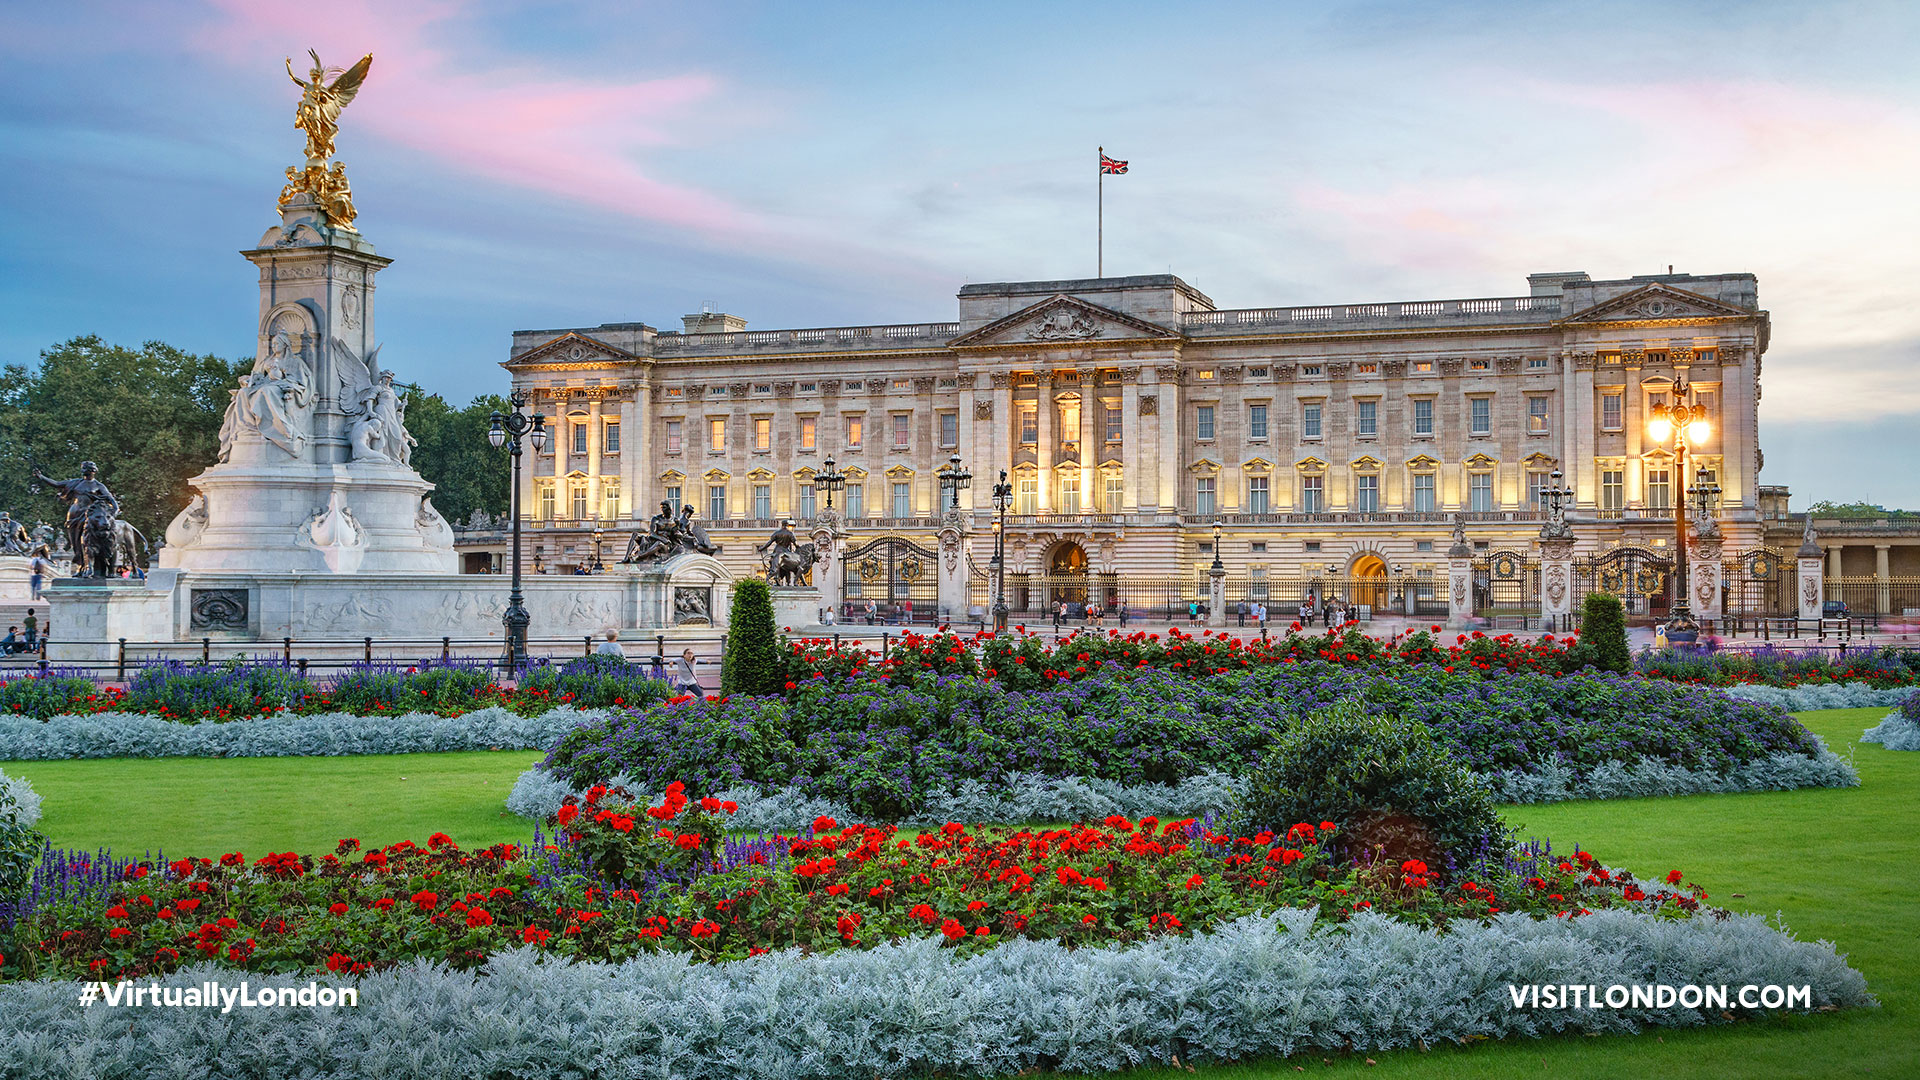 London - Buckingham Palace - Buckingham Palace during the day